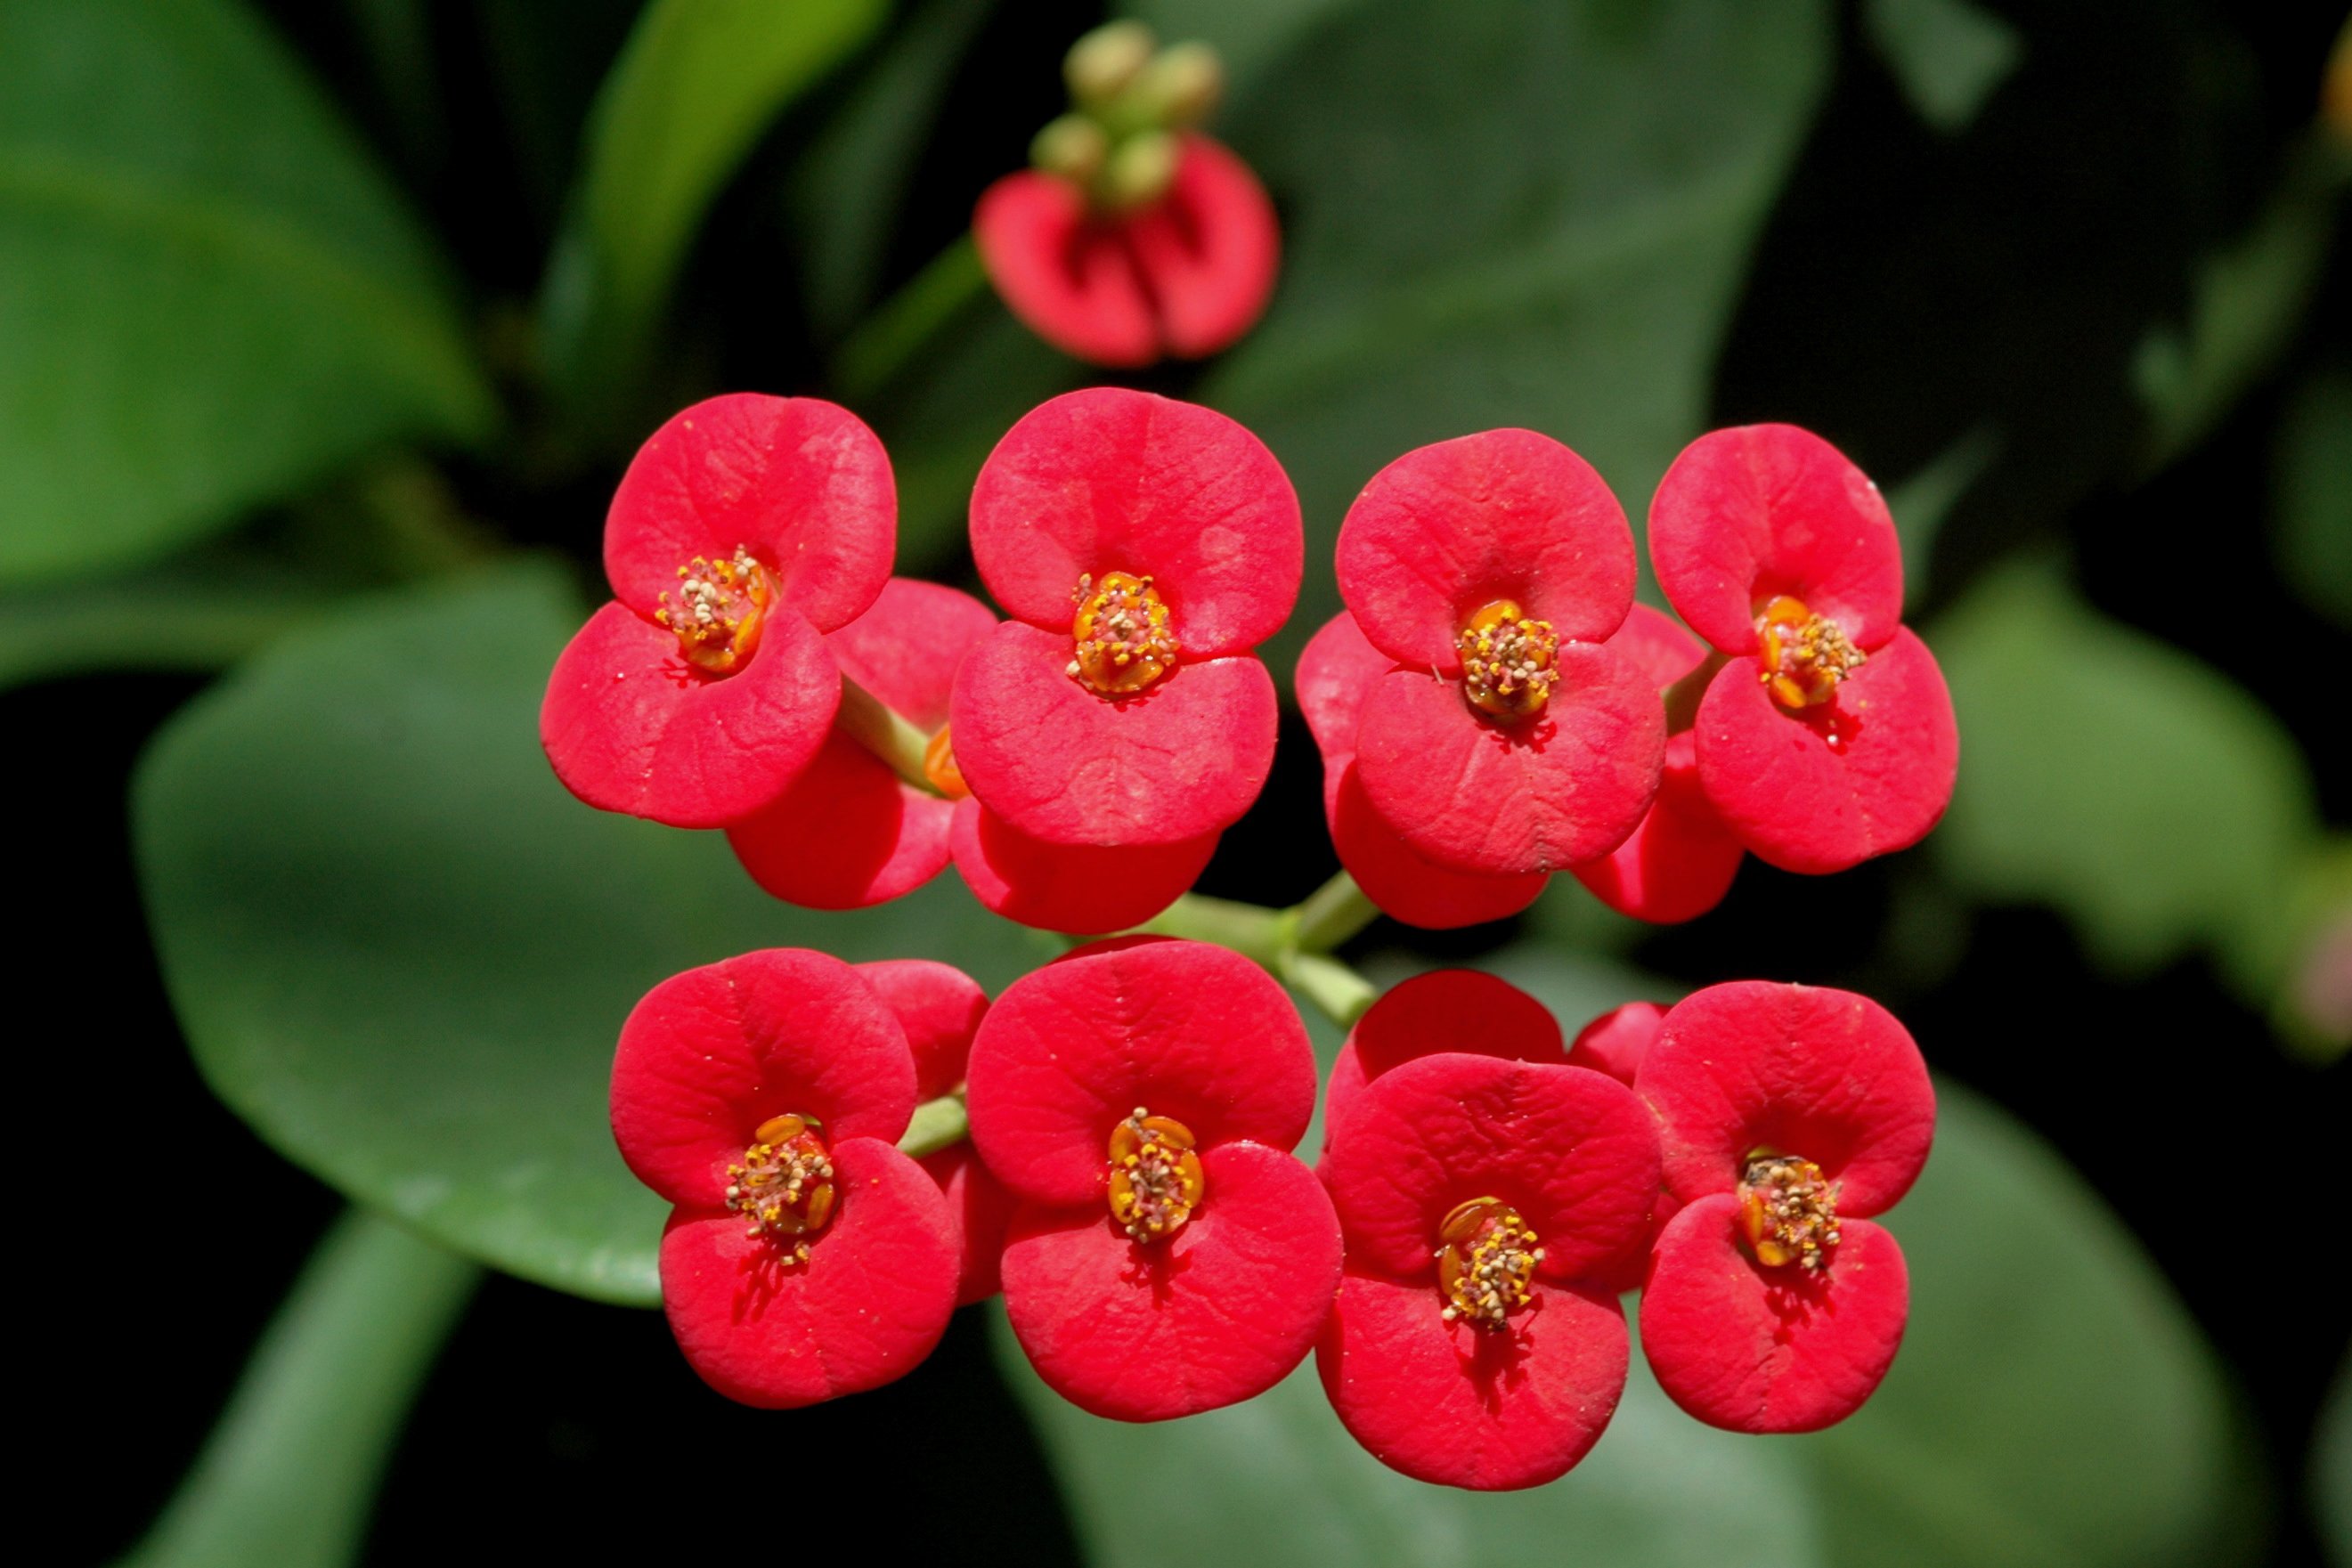 Euphorbia flowers photo